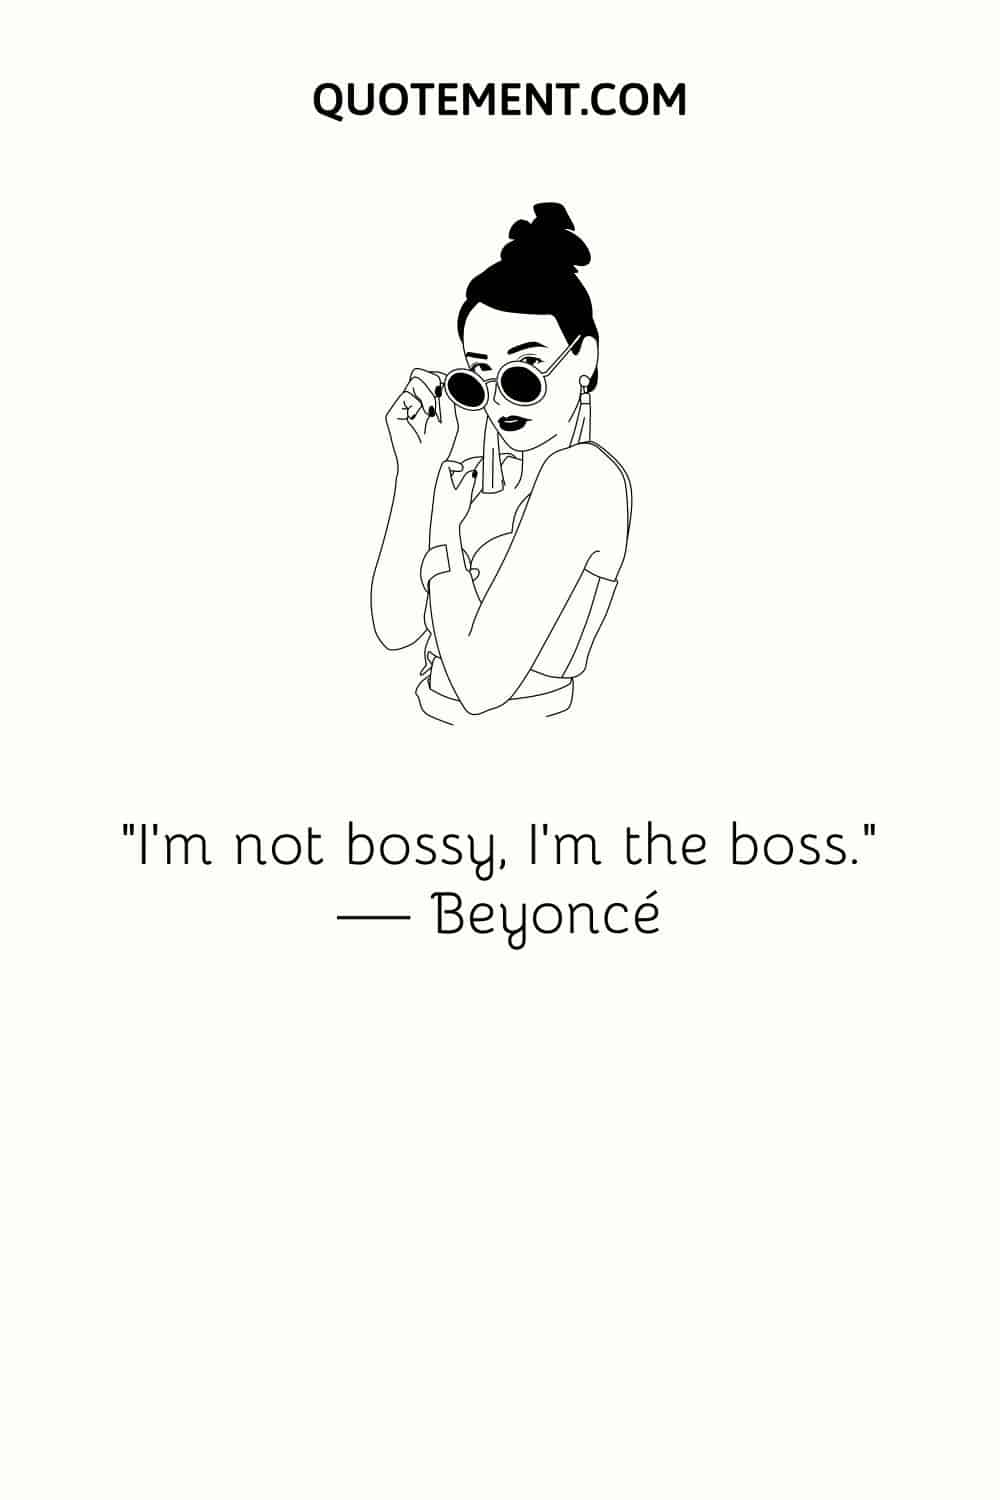 “I’m not bossy, I’m the boss.” — Beyoncé